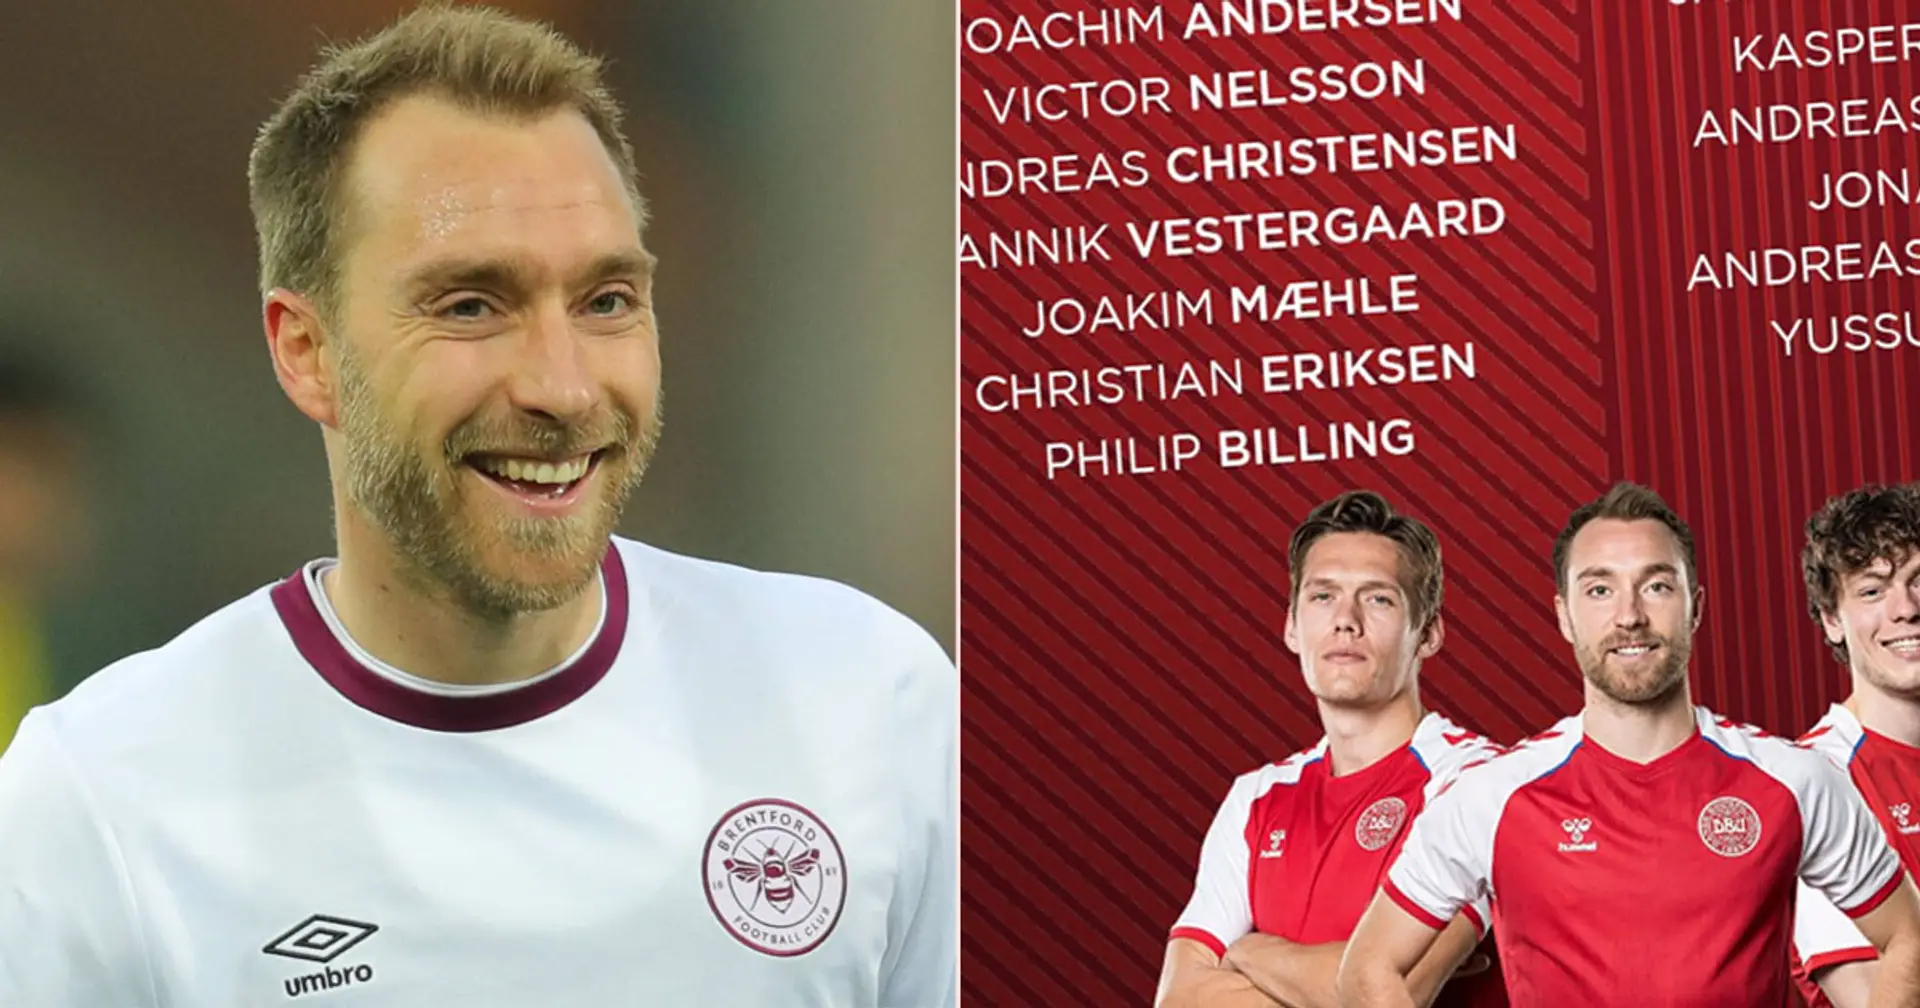 Christian Eriksen wird zum ersten Mal seit dem Herzstillstand bei der Euro 2020 in Dänemarks Kader berufen